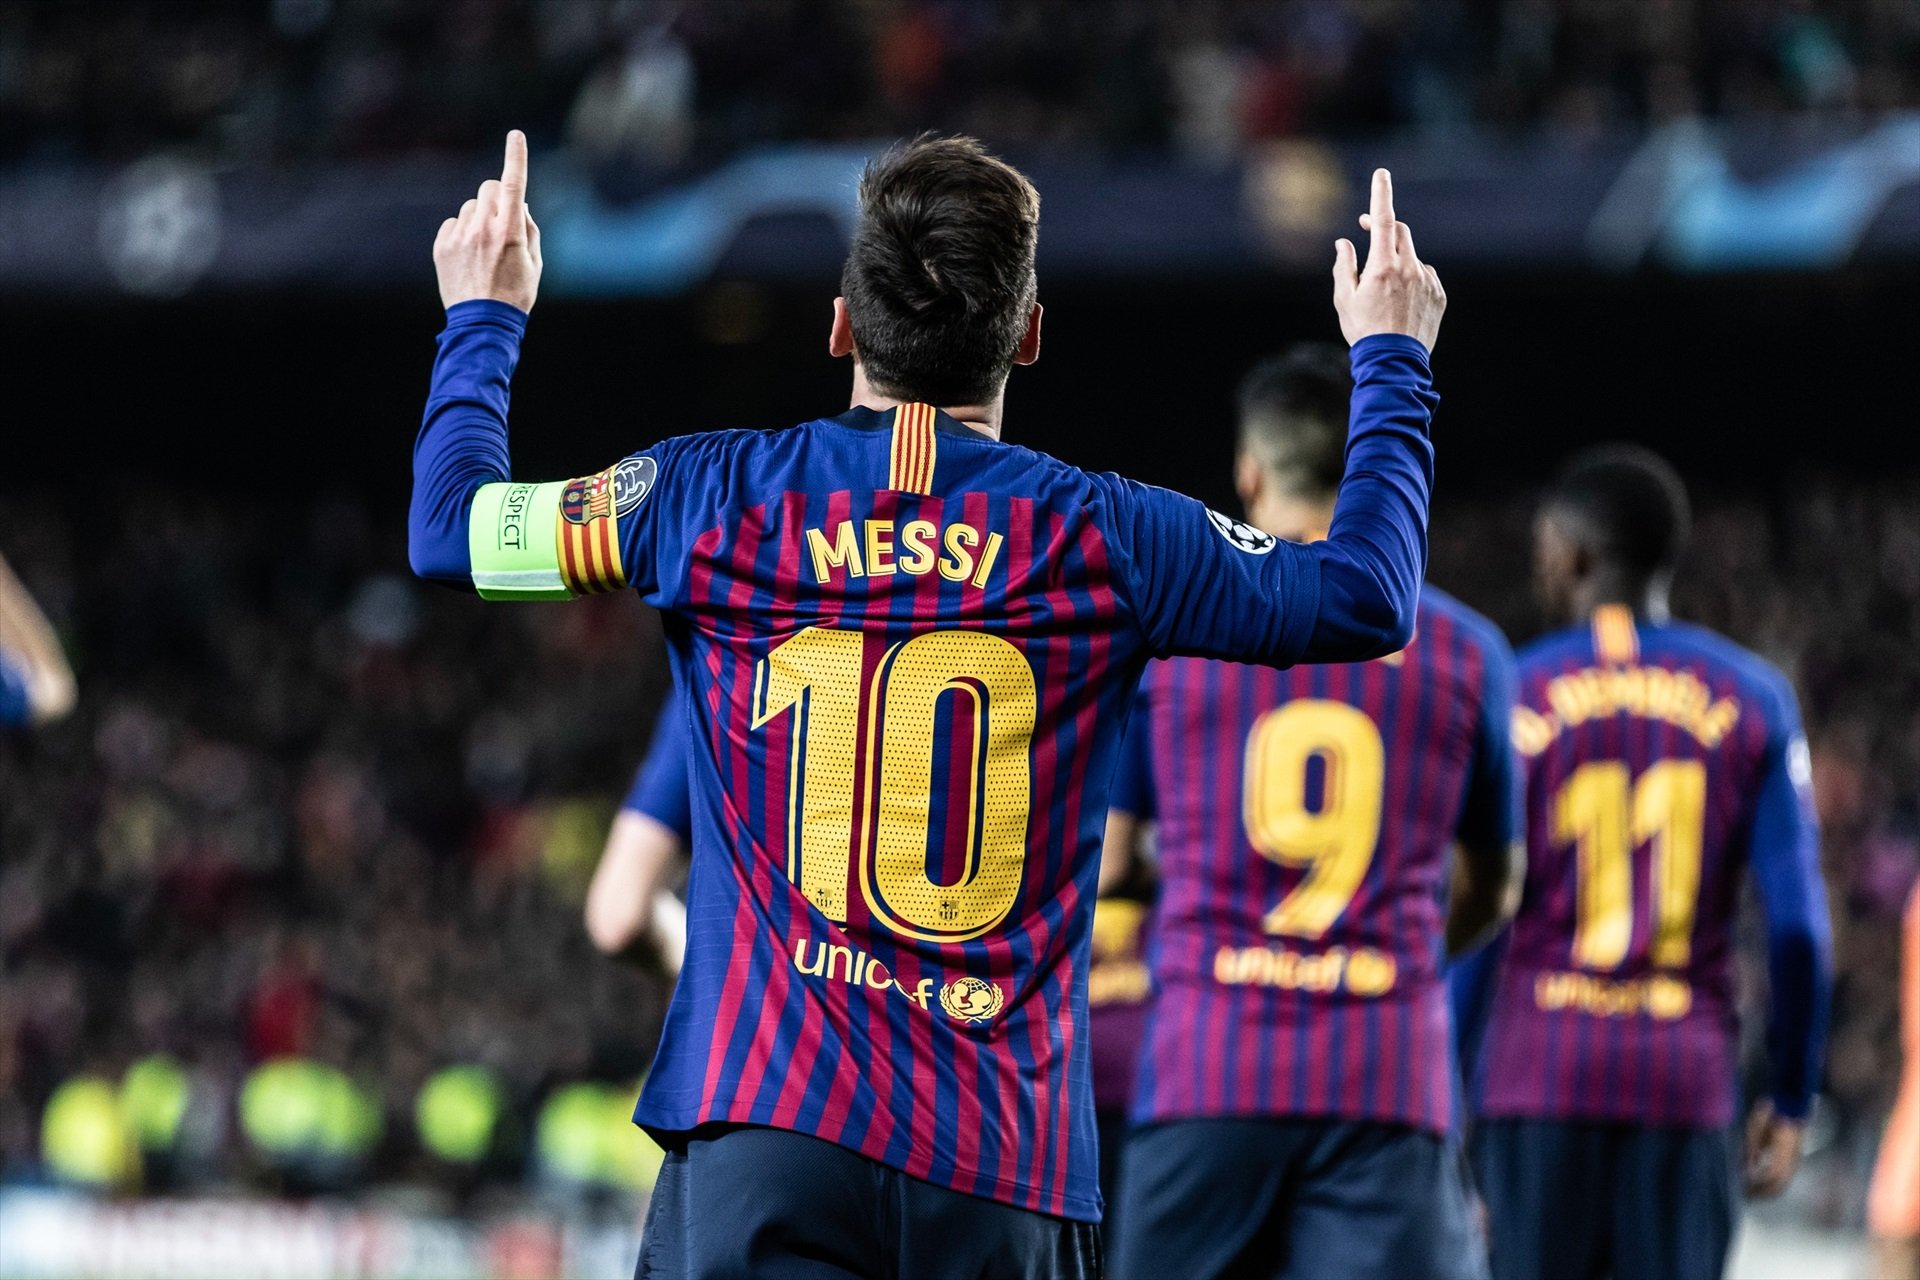 Sigue los pasos de Messi y cambia Nike por Adidas, el Barça quiere darle el 10